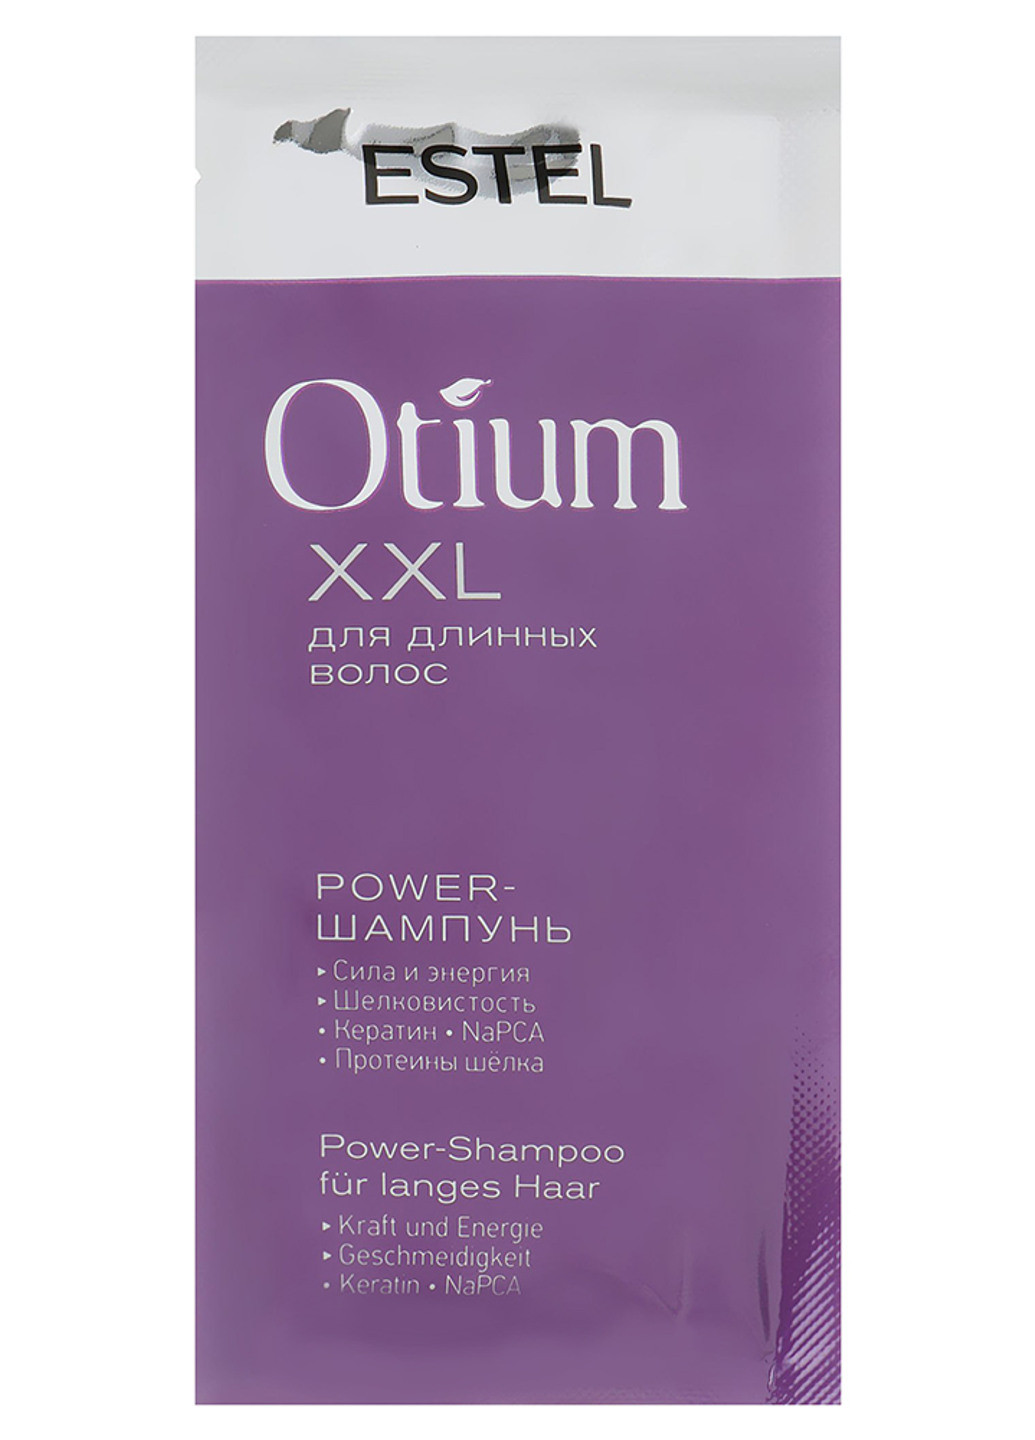 Power-шампунь для длинных волос Otium XXL Power-Shampoo 10 мл Estel Professional (201694989)